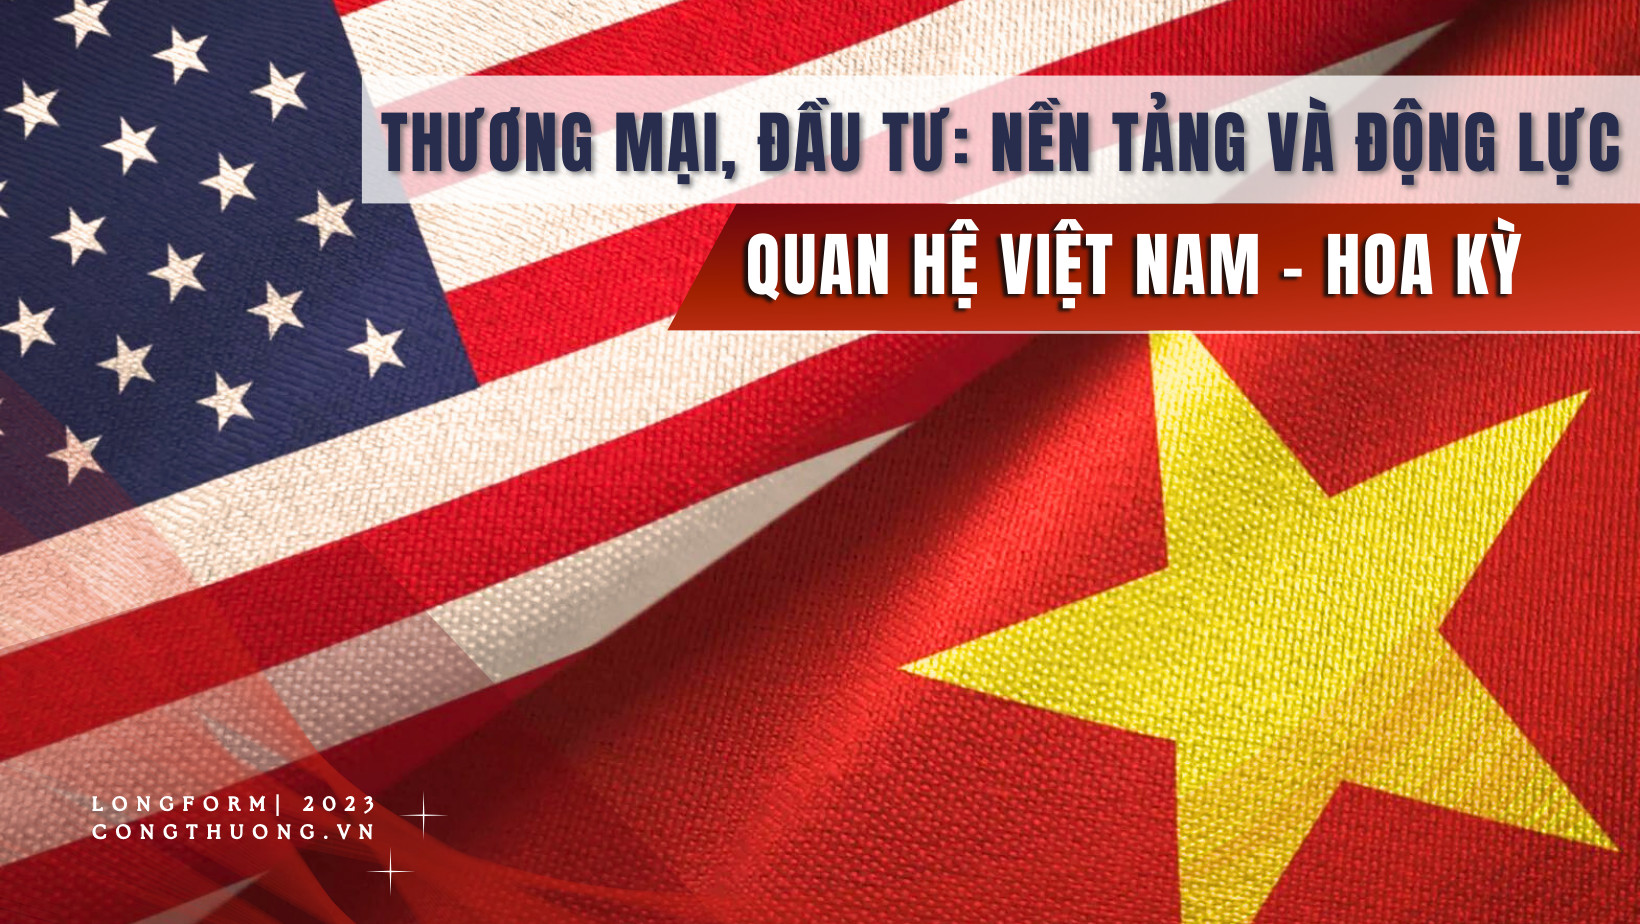 Longform | Thương mại, đầu tư: Nền tảng và động lực quan hệ Việt Nam - Hoa Kỳ